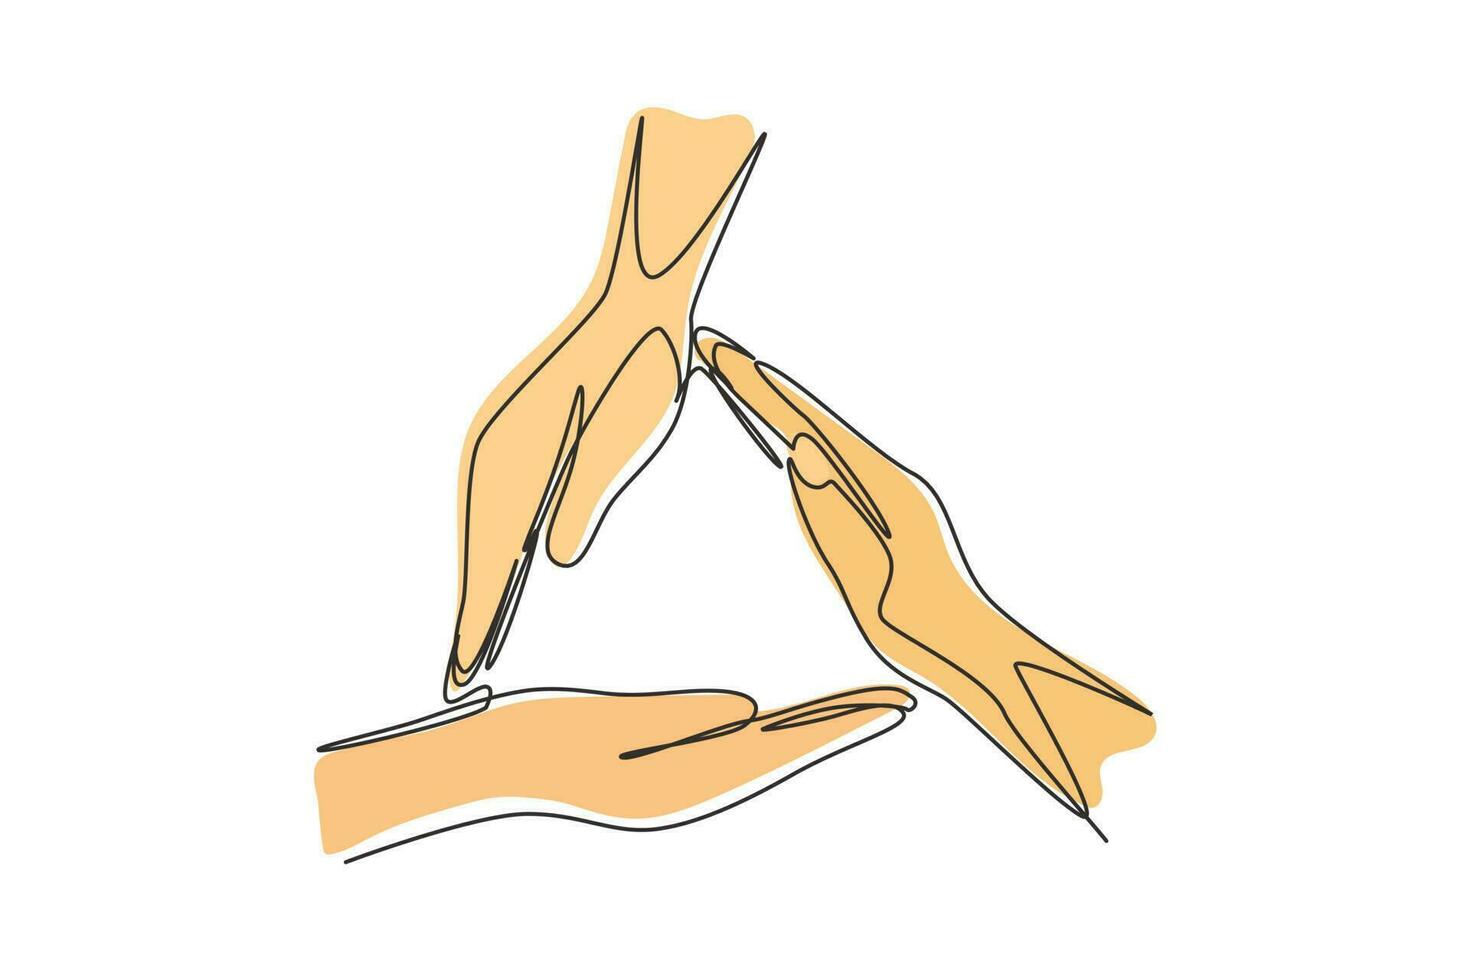 desenho de uma linha contínua única três palmas das mãos fazem a forma de moldura de triângulo. símbolo de segurança. comunicação com gestos com as mãos. sinais não verbais. ilustração em vetor desenho gráfico dinâmico de uma linha